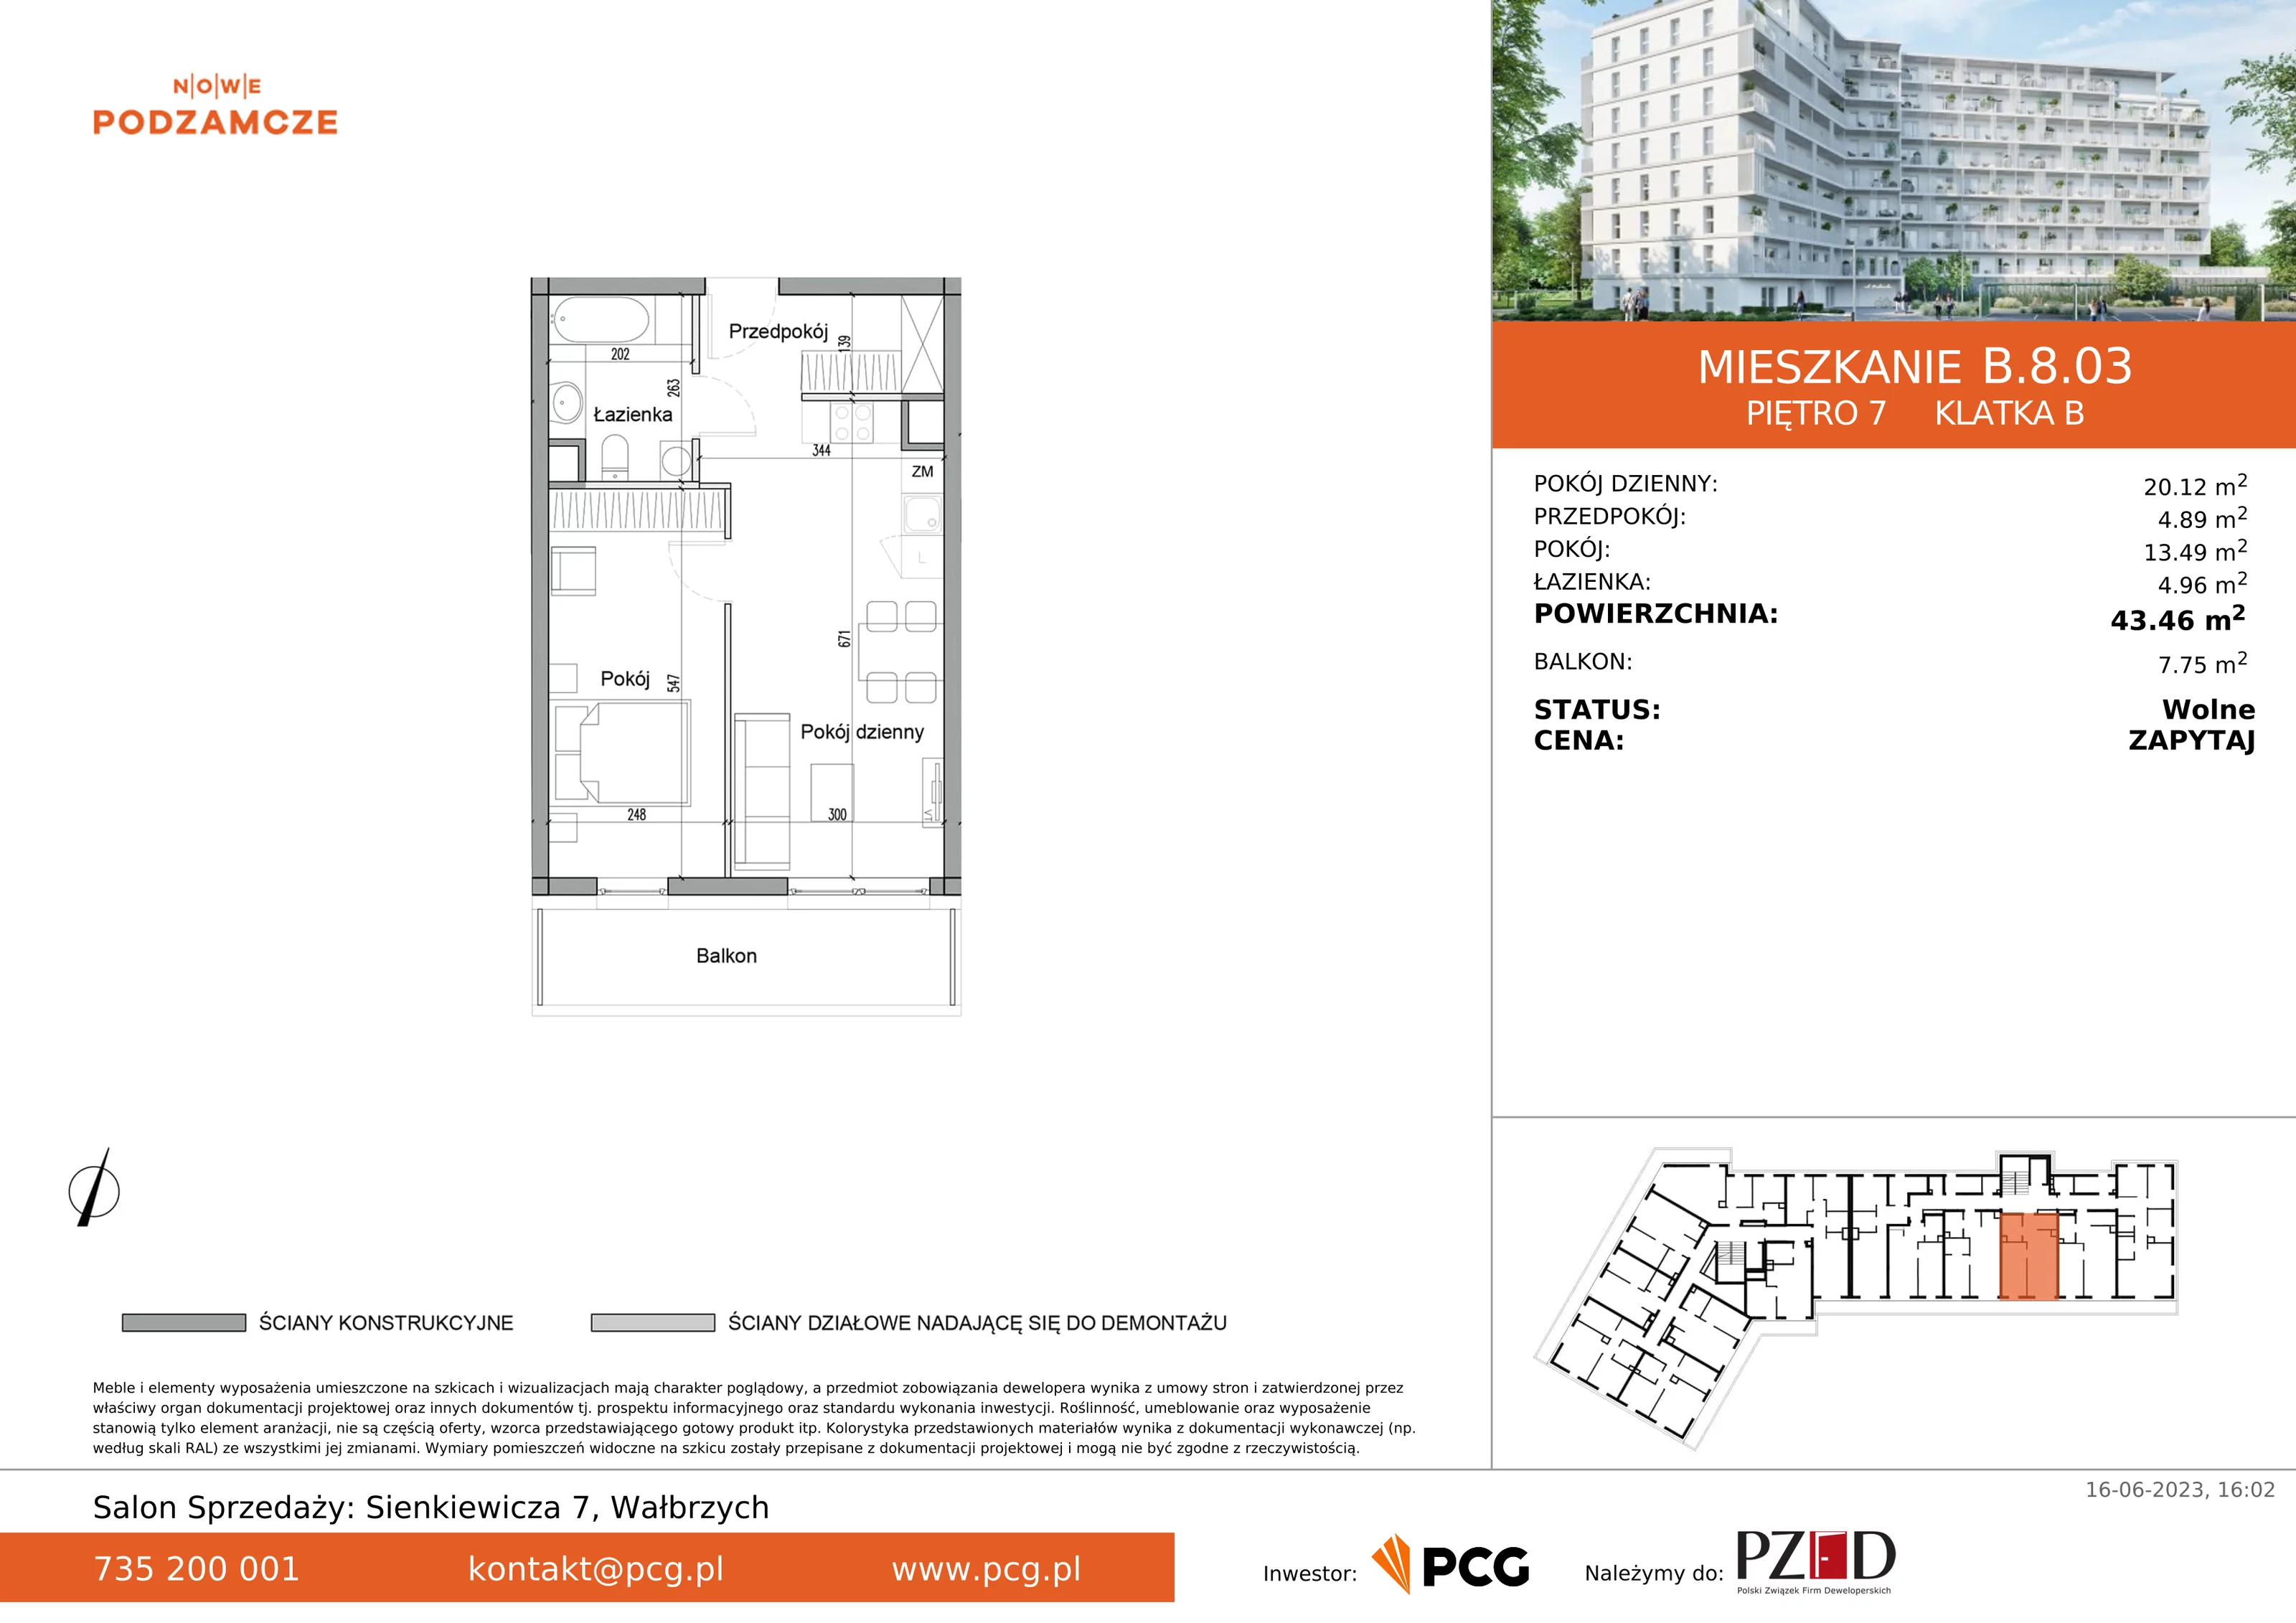 Mieszkanie 43,46 m², piętro 7, oferta nr B.8.03, Nowe Podzamcze, Wałbrzych, al. Podwale 2, 4